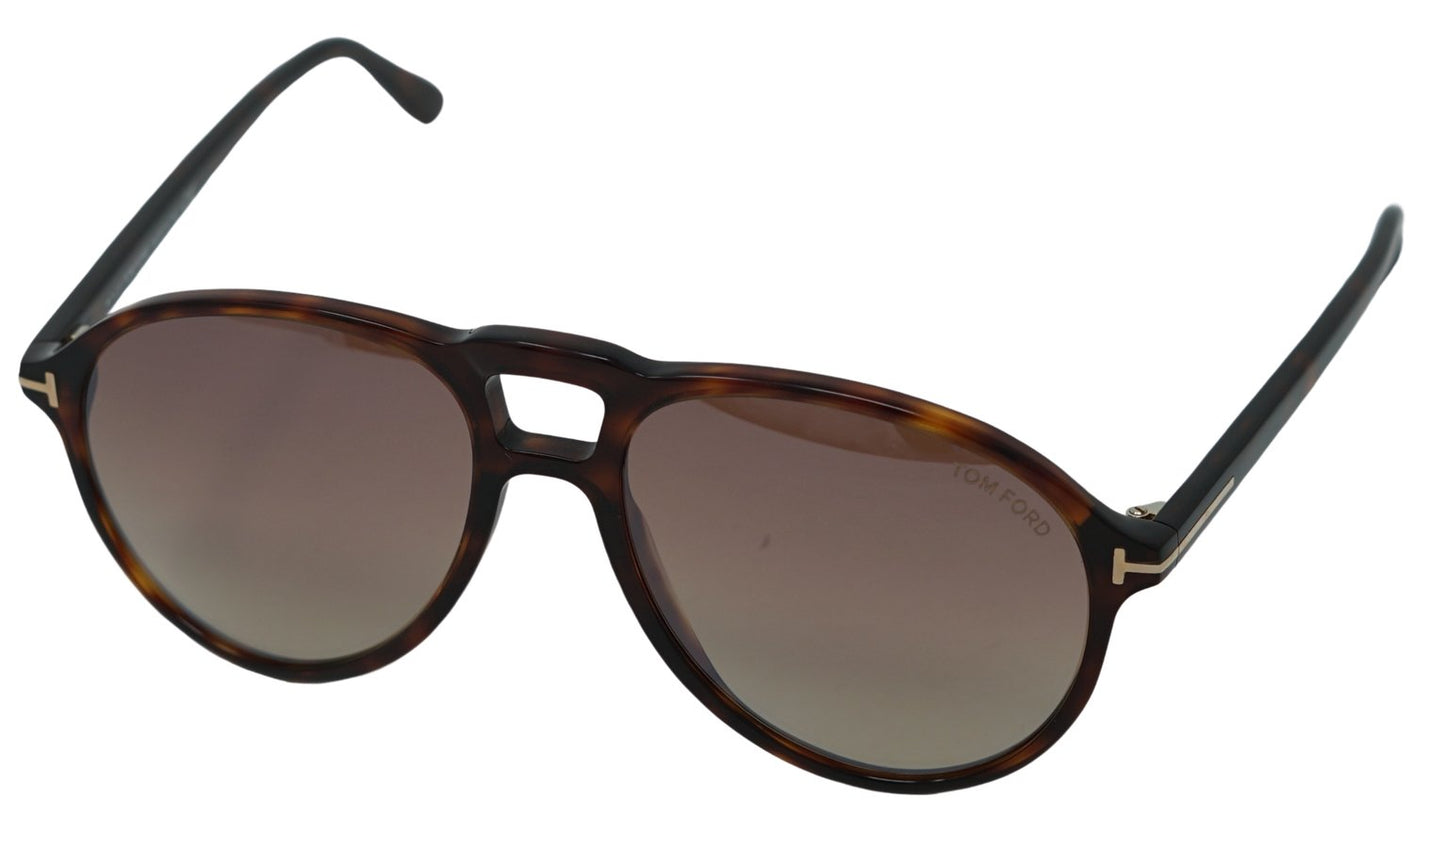 Tom Ford Lennon Sunglasses